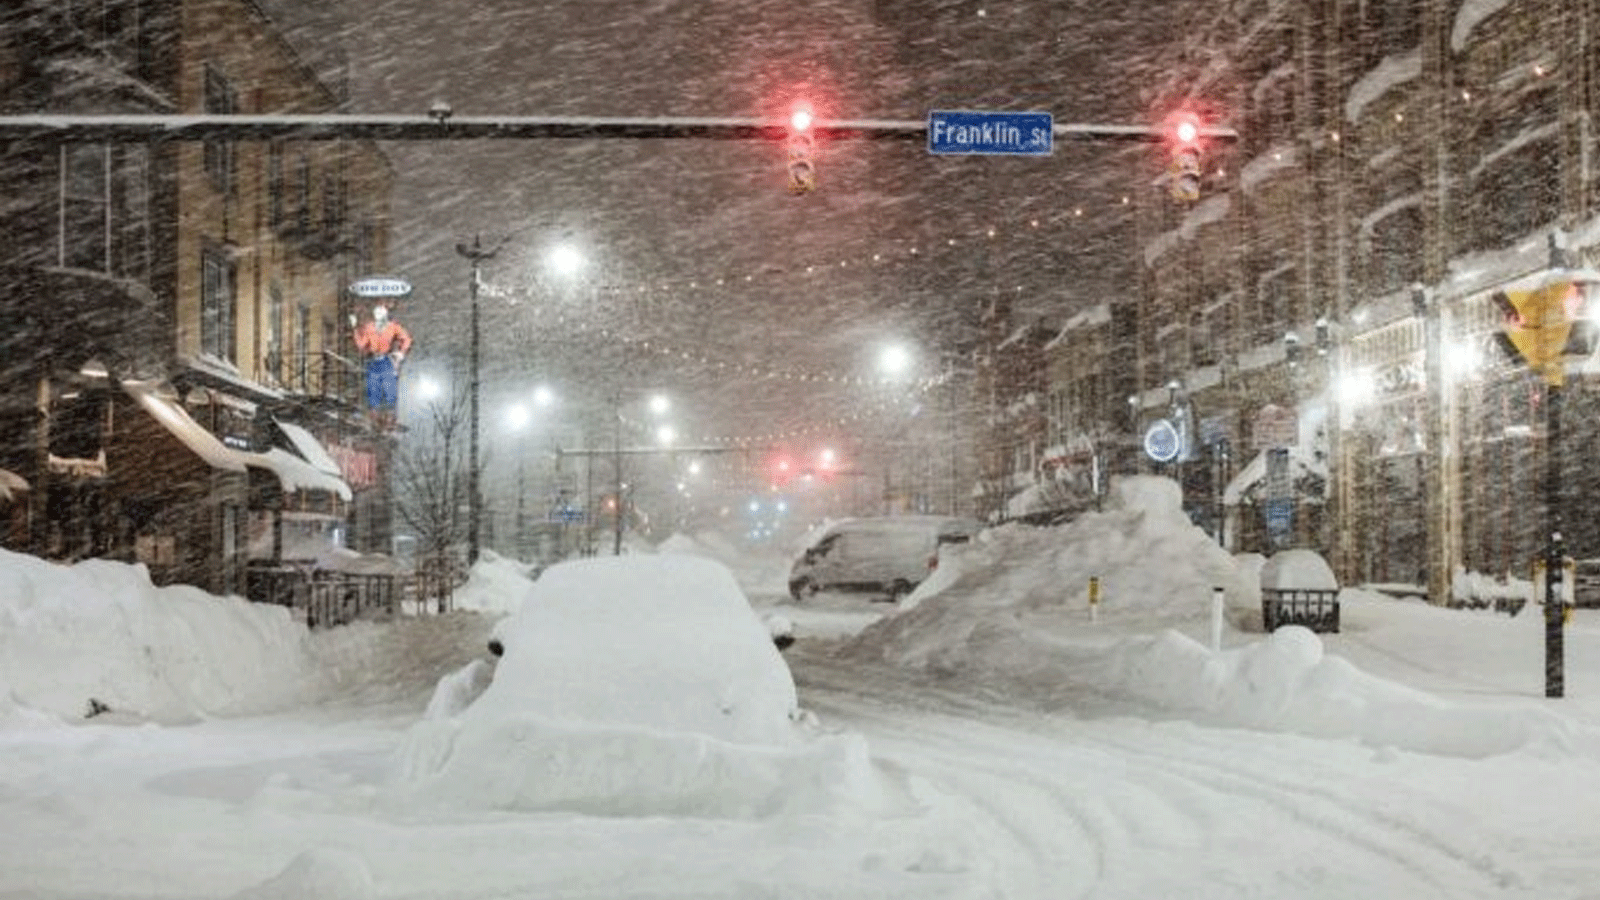 مركبات مهجورة وسط تساقط الثلوج بغزارة في وسط مدينة بوفالو، نيويورك، في 26 كانون الأول\ديسمبر 2022 